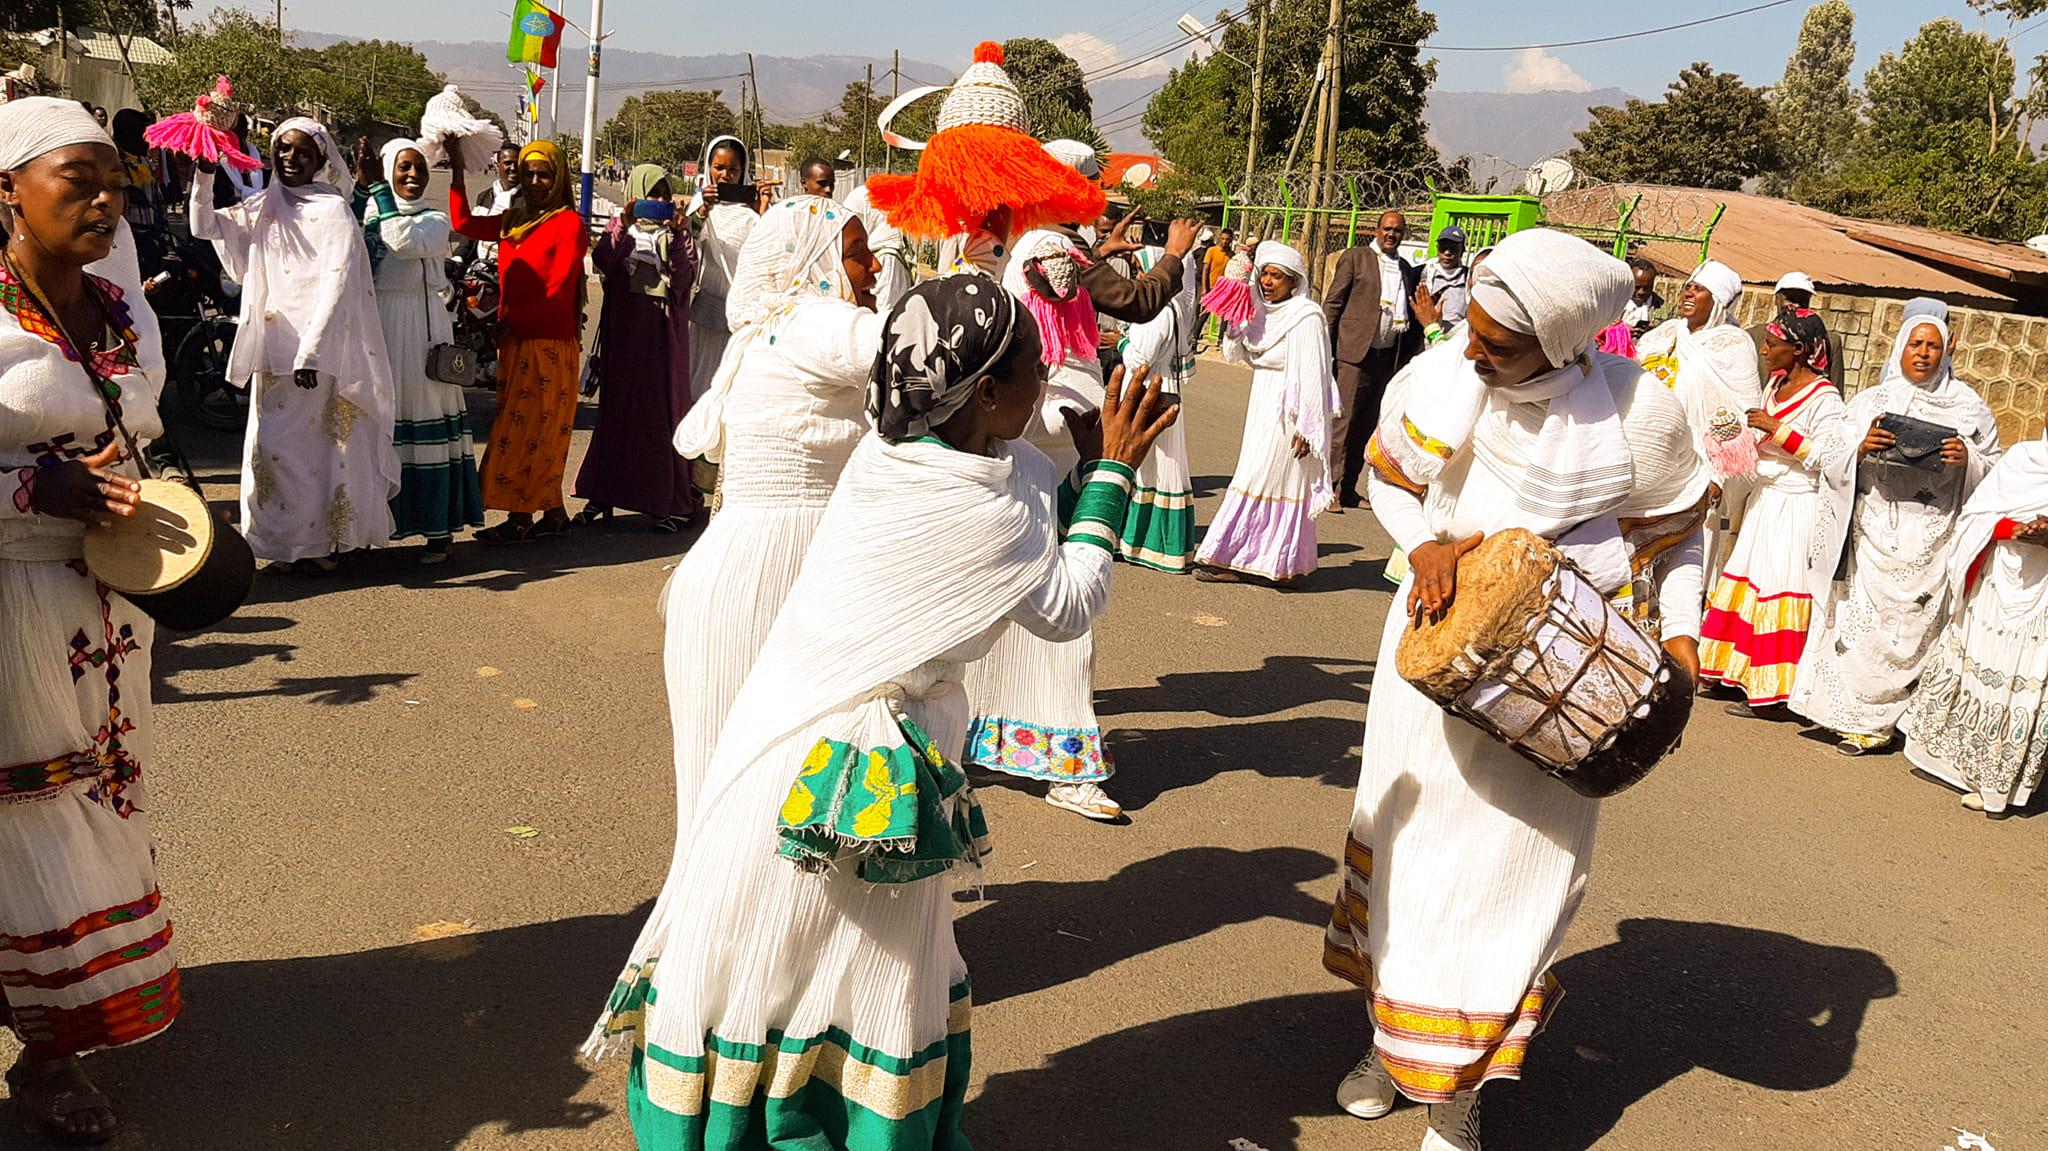 central Ethiopia region